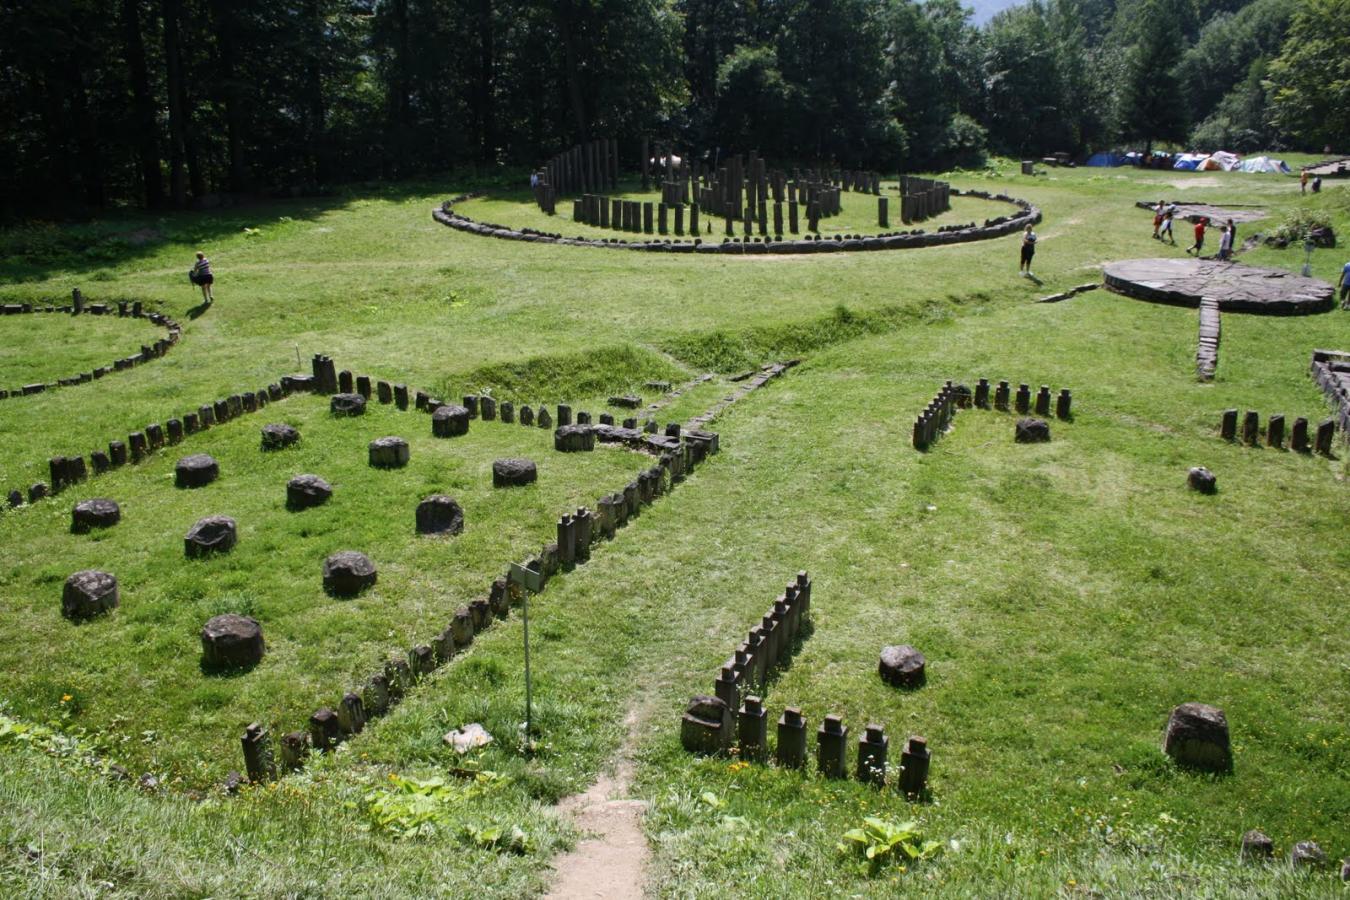 Cetatea dacică Sarmizegetusa Regia și-a redeschis porțile pentru vizitatori